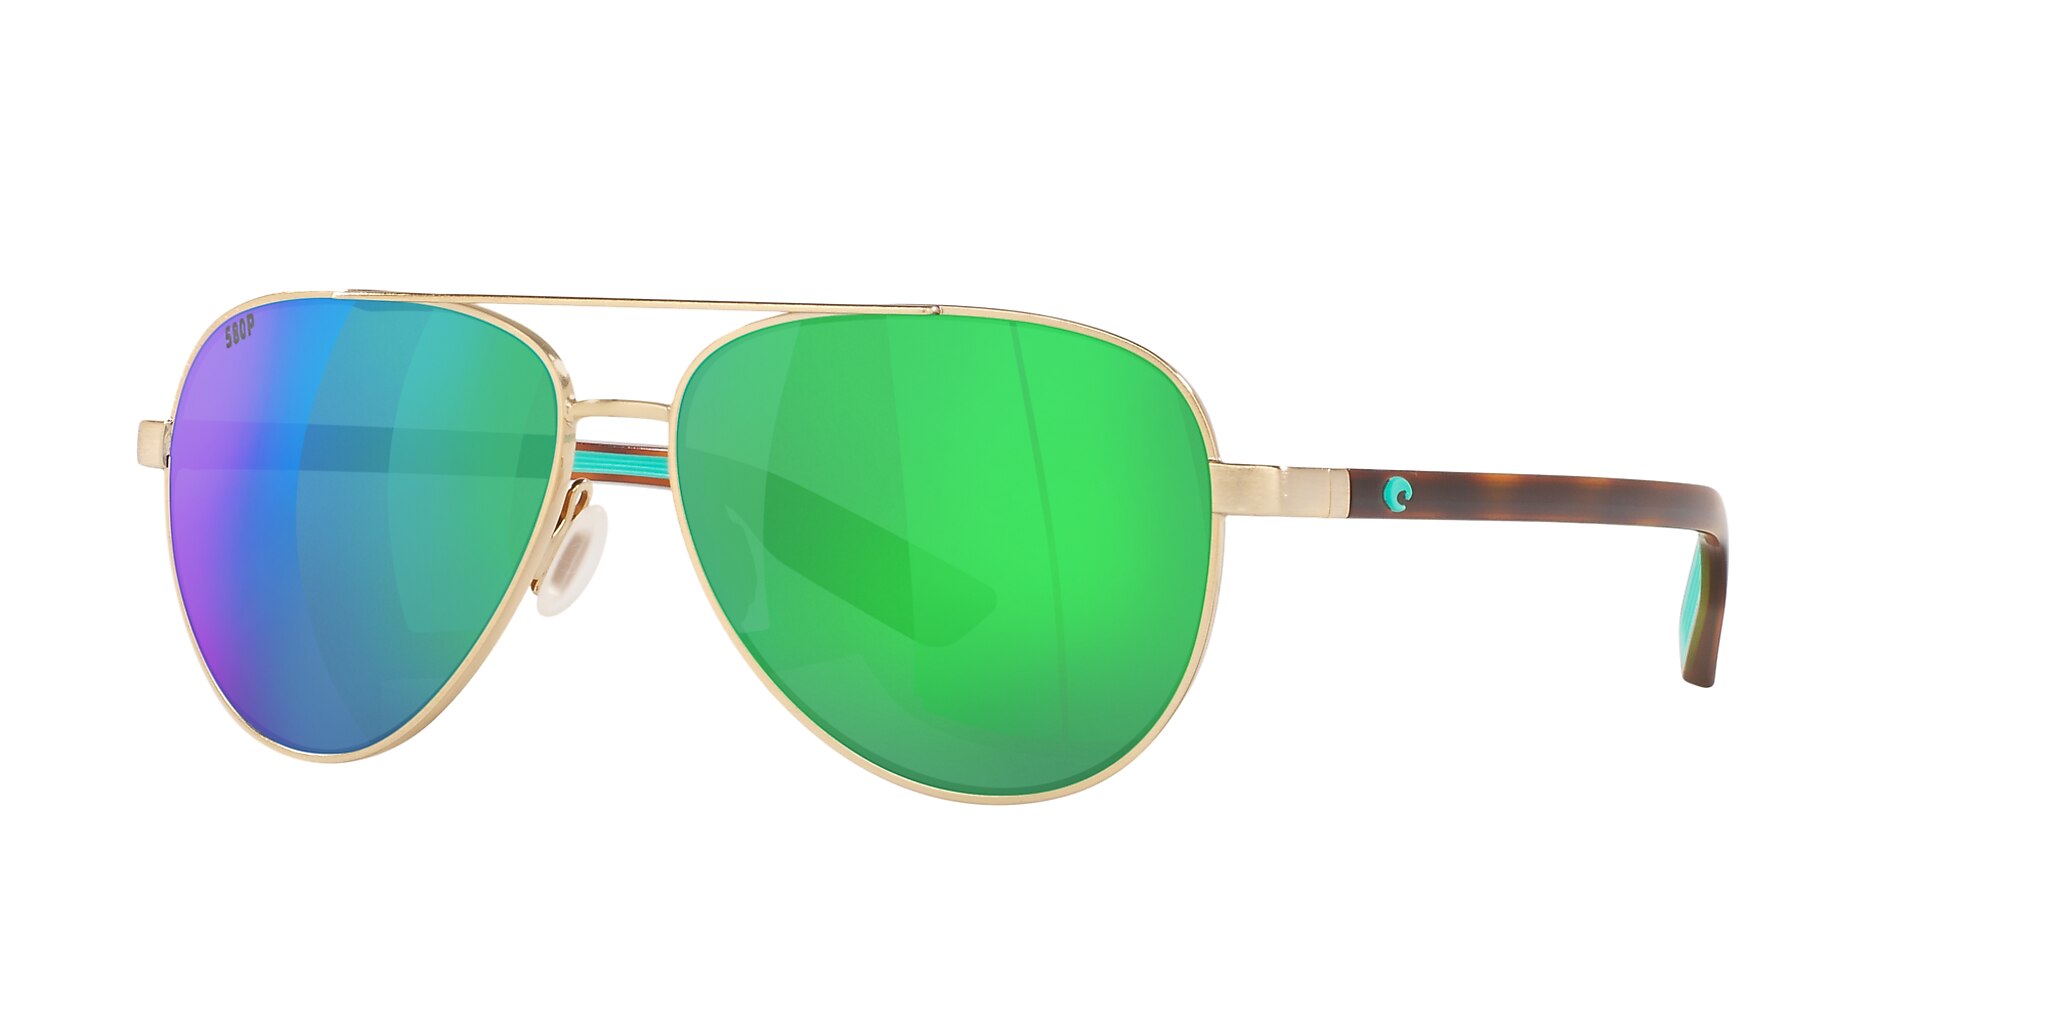 Peli Polarized Sunglasses in Green Mirror | Costa Del Mar®